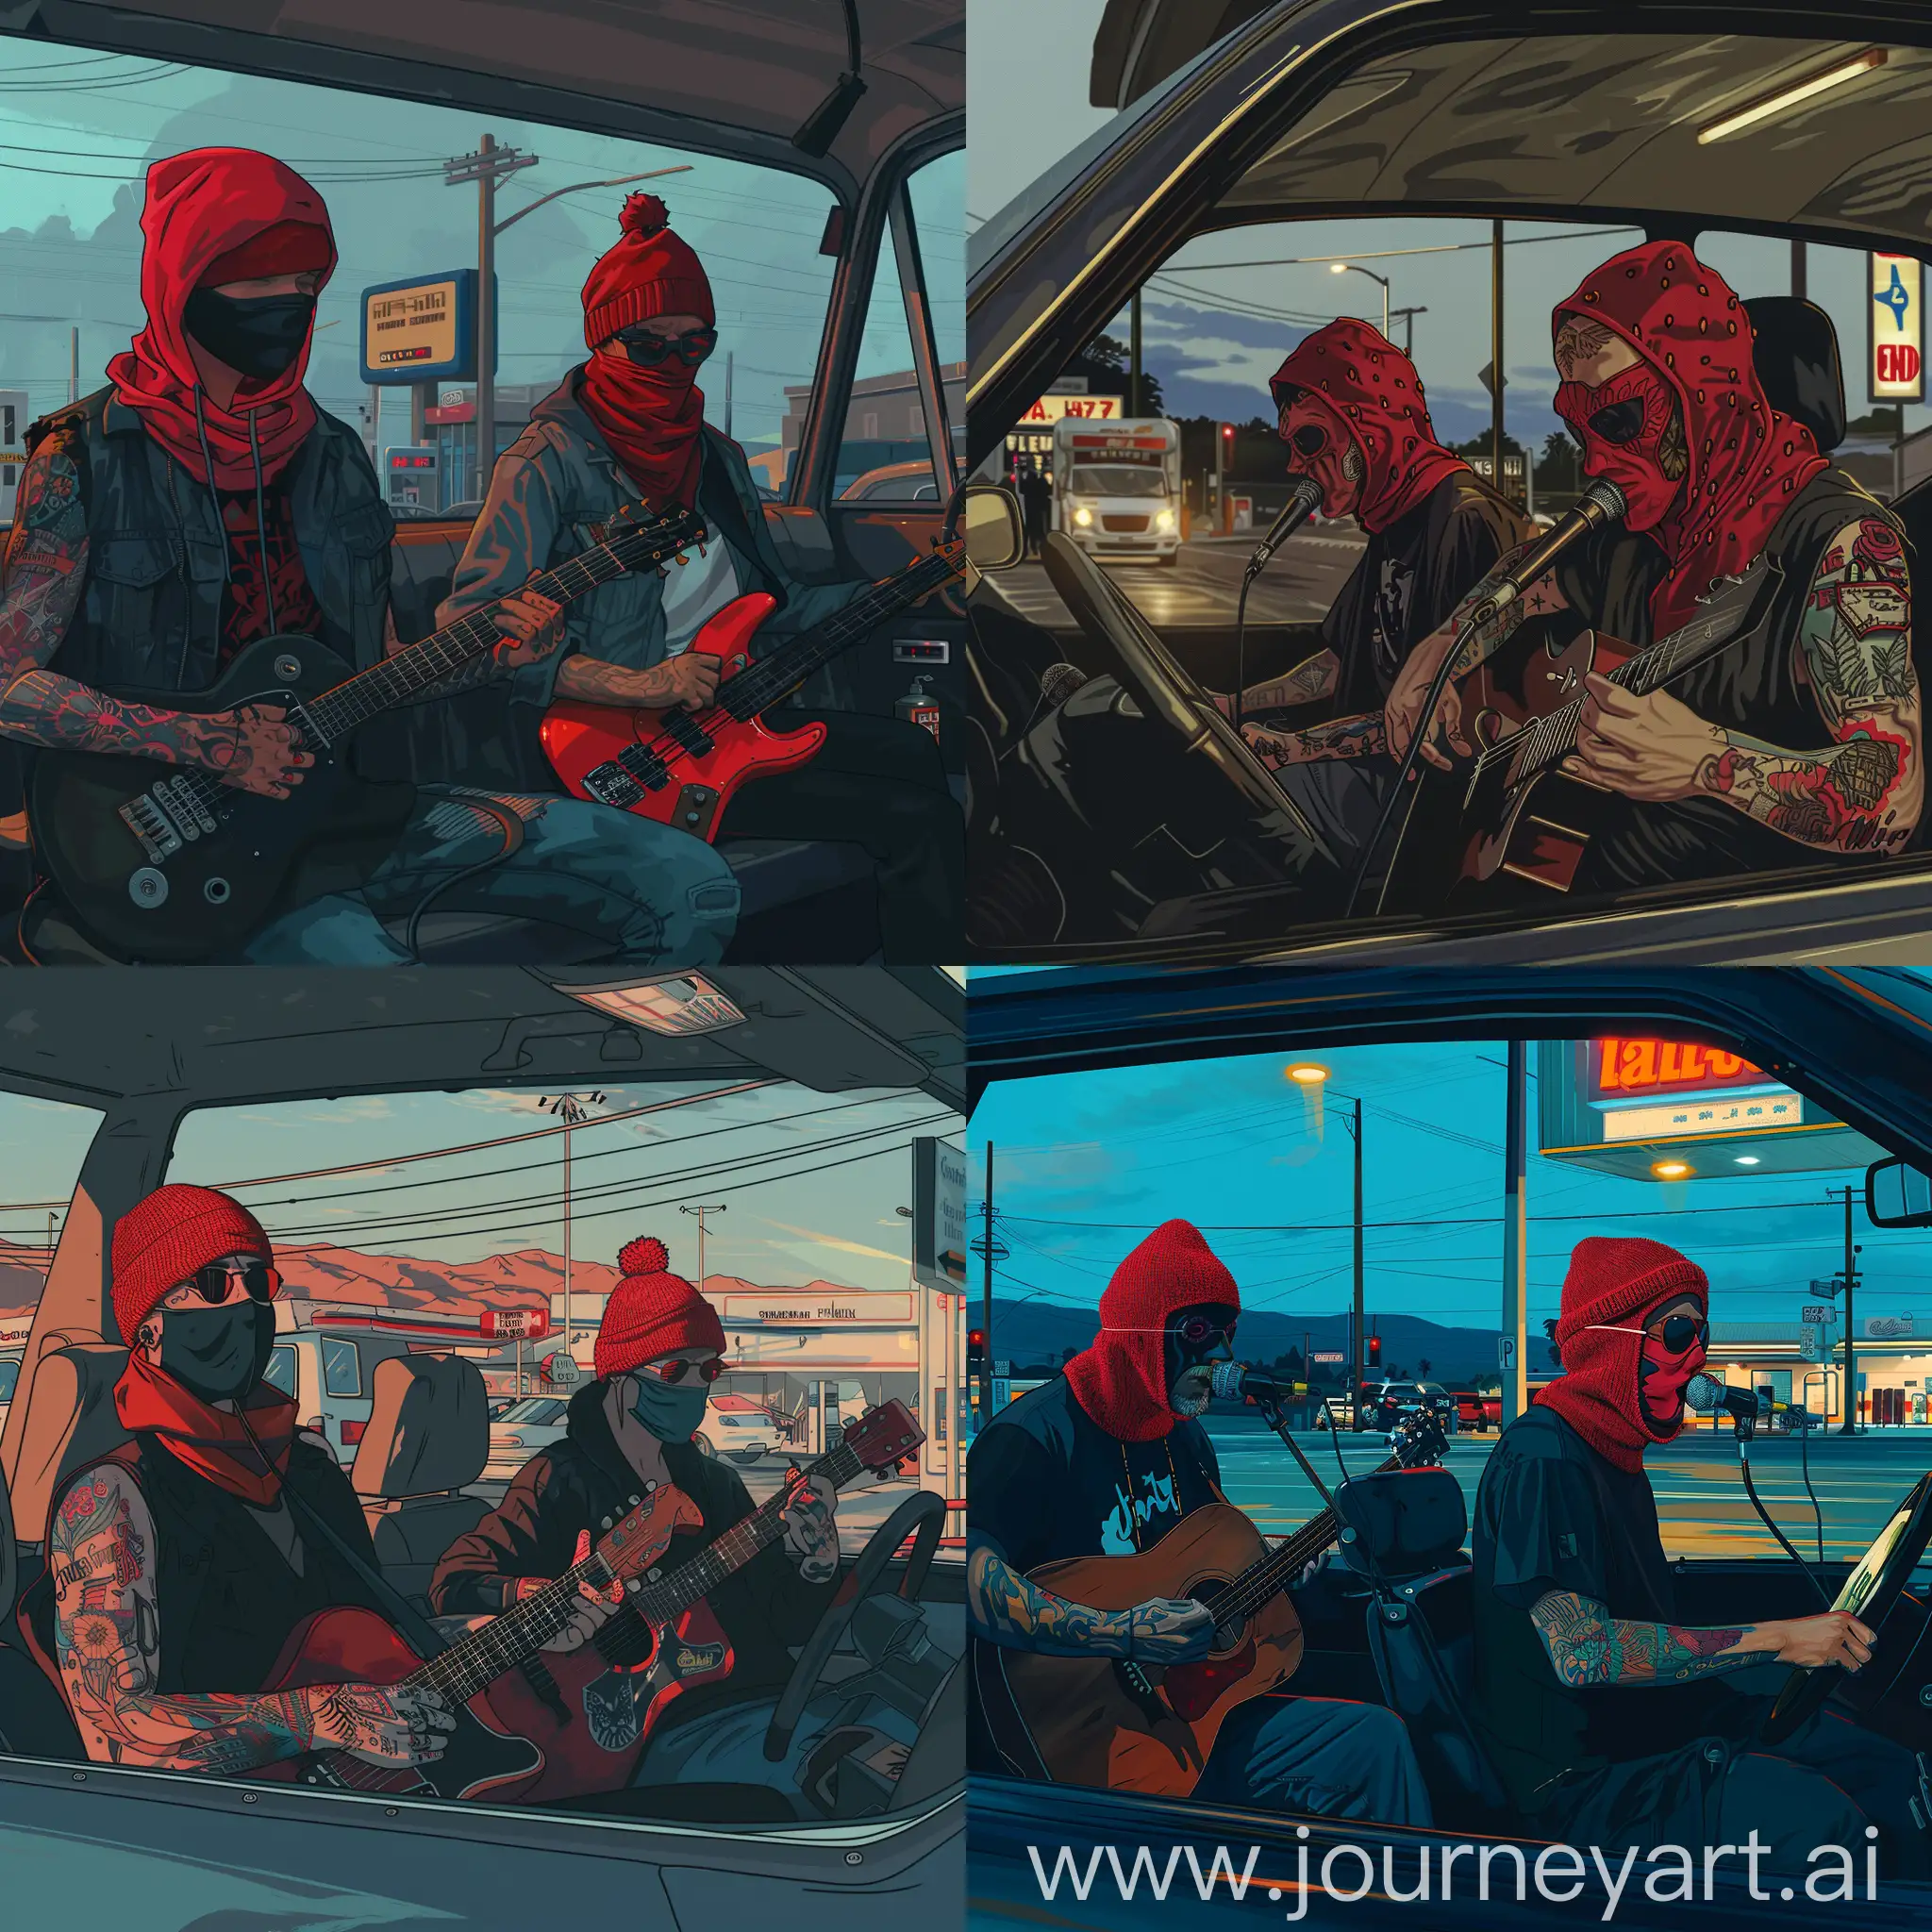 Два парня делают музыку в машине на заправке. У одного из них татуировка на руке, на их головах красные шерстяные маски. В рисованном стиле 